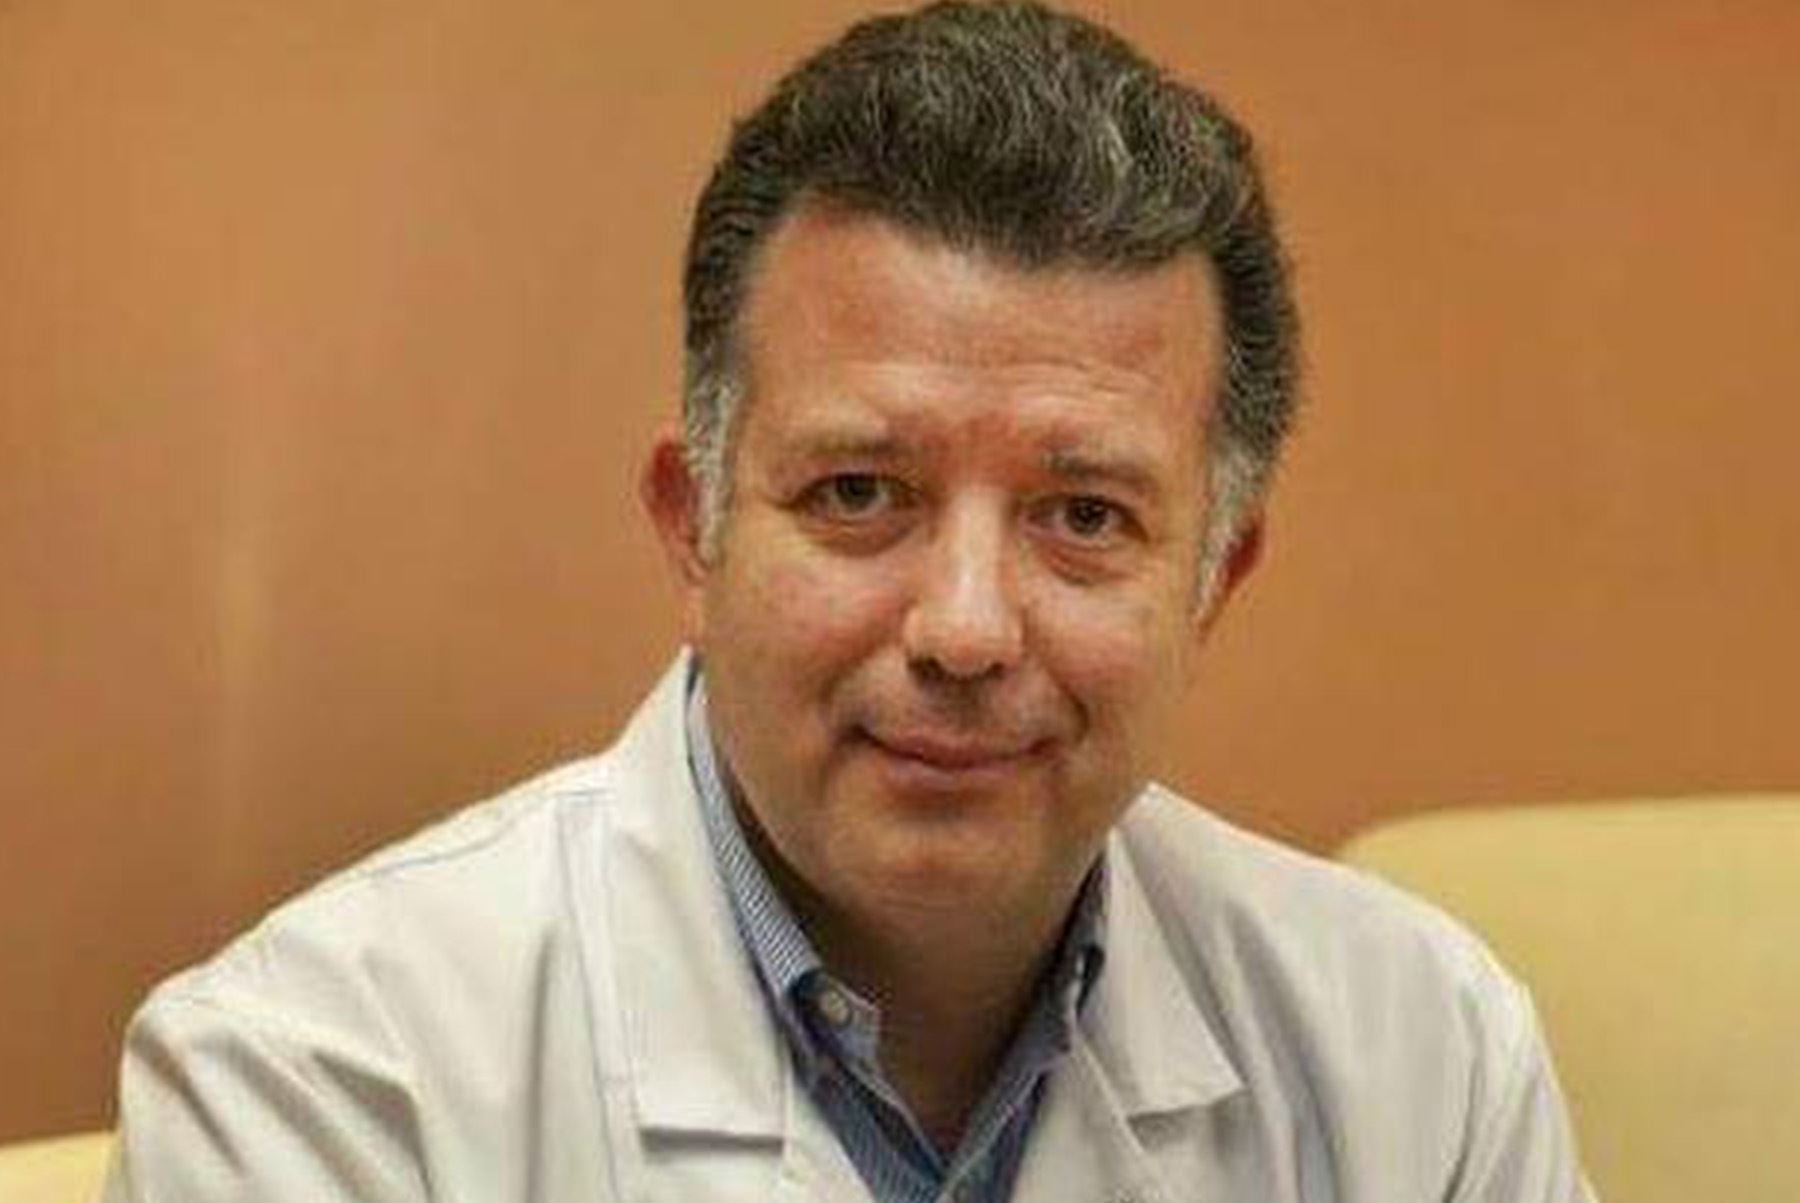 "La vacuna reduce el riesgo pero no elimina completamente al virus y es indispensable seguir respetando todas las reglas de prevención", señala el médico peruano Enrique Casalino.